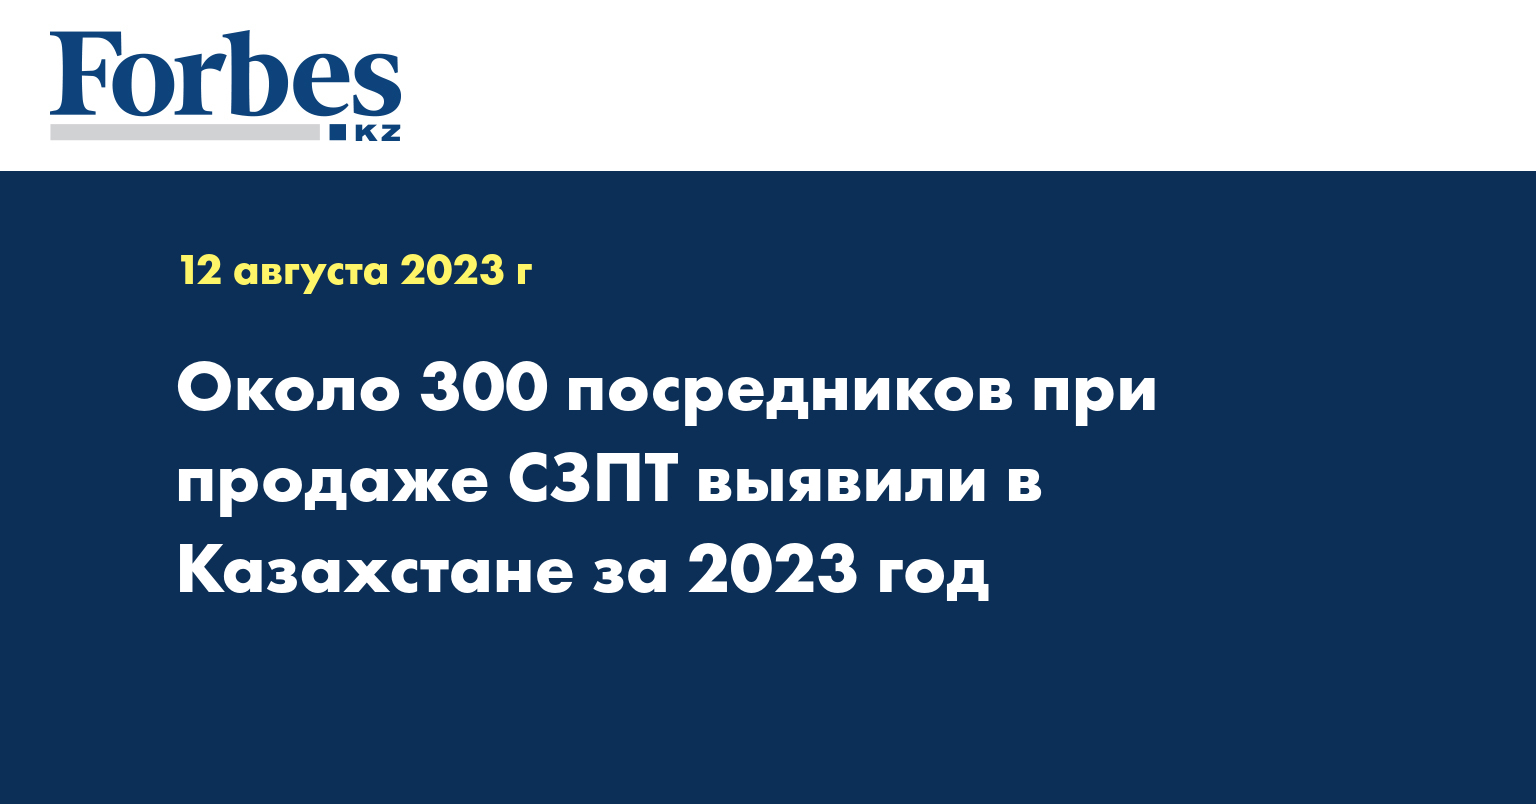 Около 300 посредников при продаже СЗПТ выявили в Казахстане за 2023 год